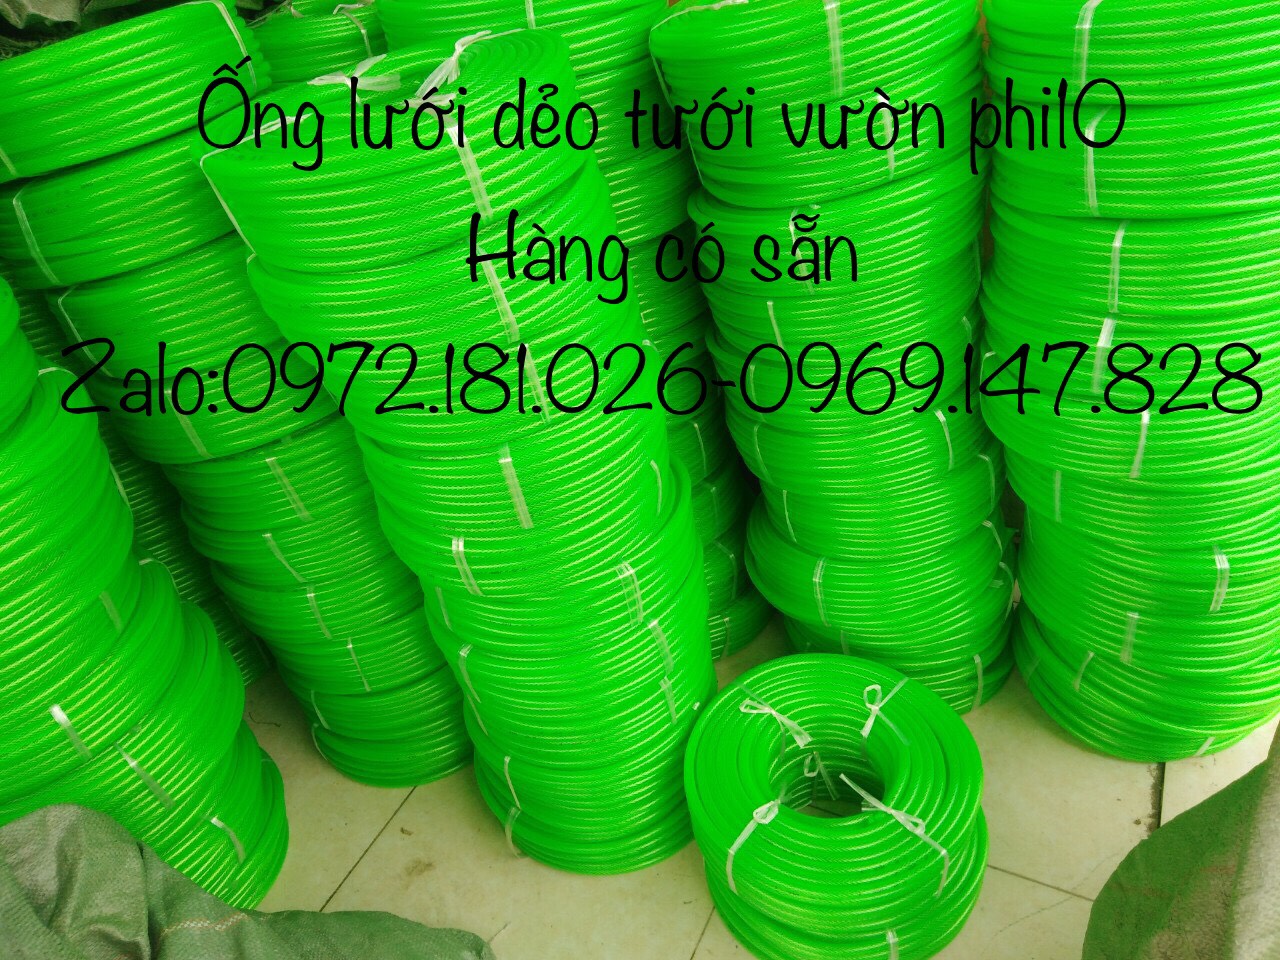 http://sieuthiongcongnghiep.com/wp-content/uploads/2020/06/ống-nhựa-lưới-dẻo-màu-xanh.jpg